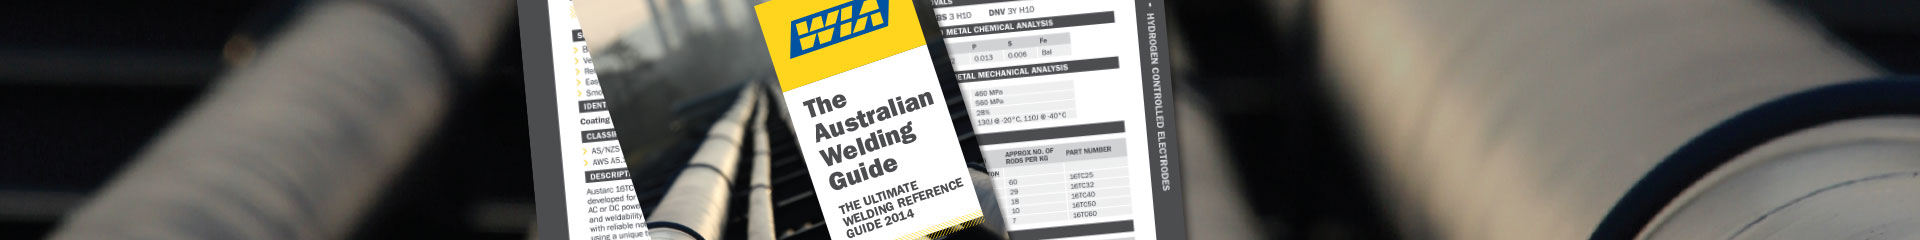 Australian Welding Guide